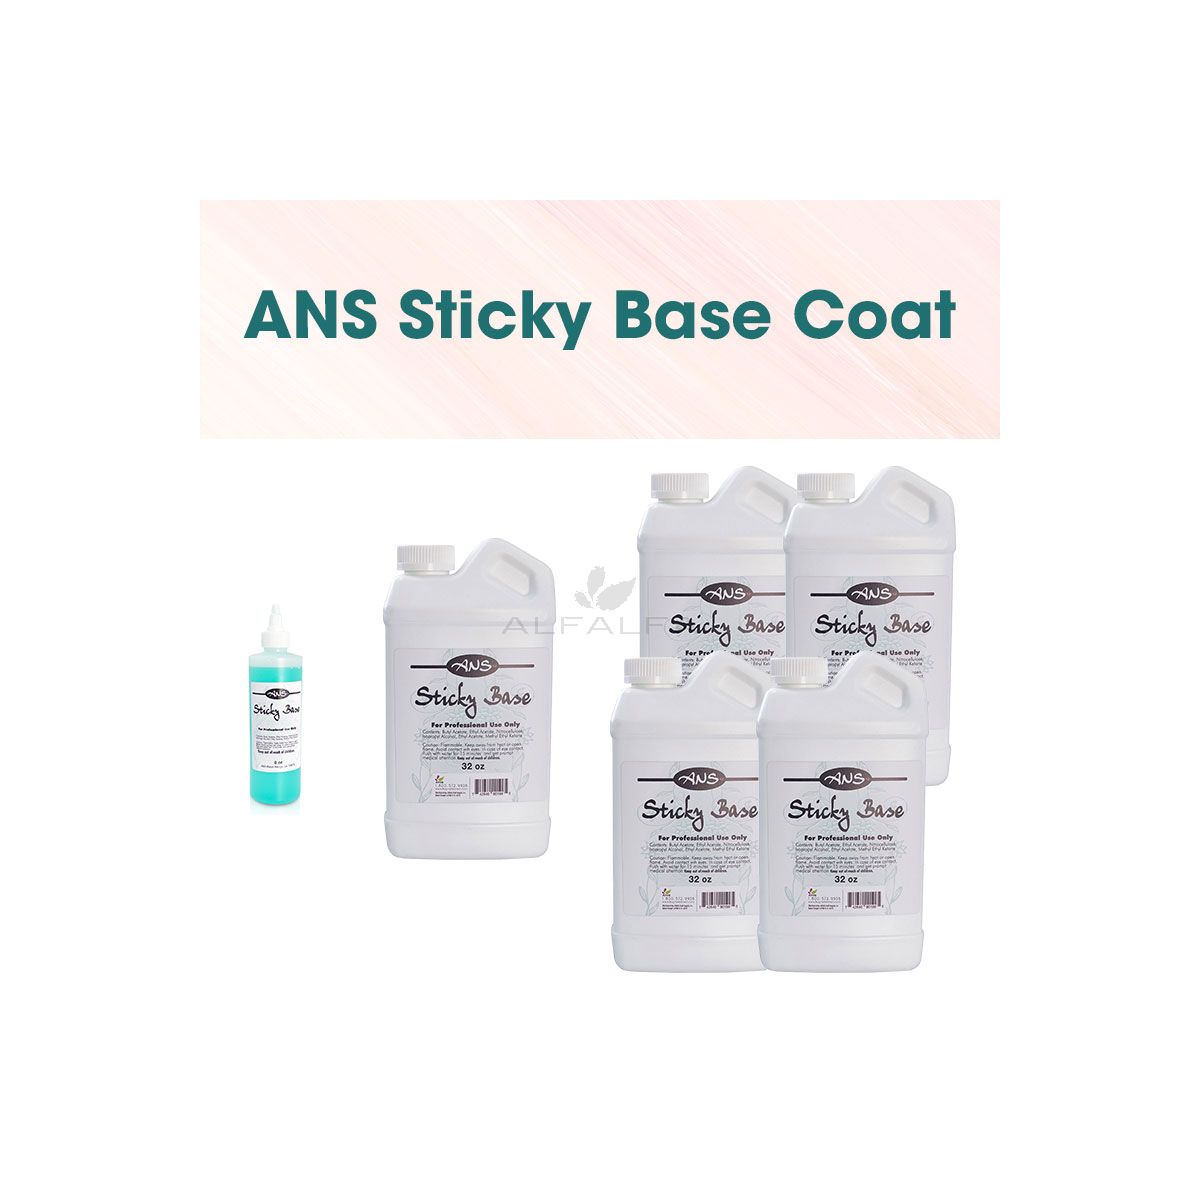 ANS Sticky Base Coat